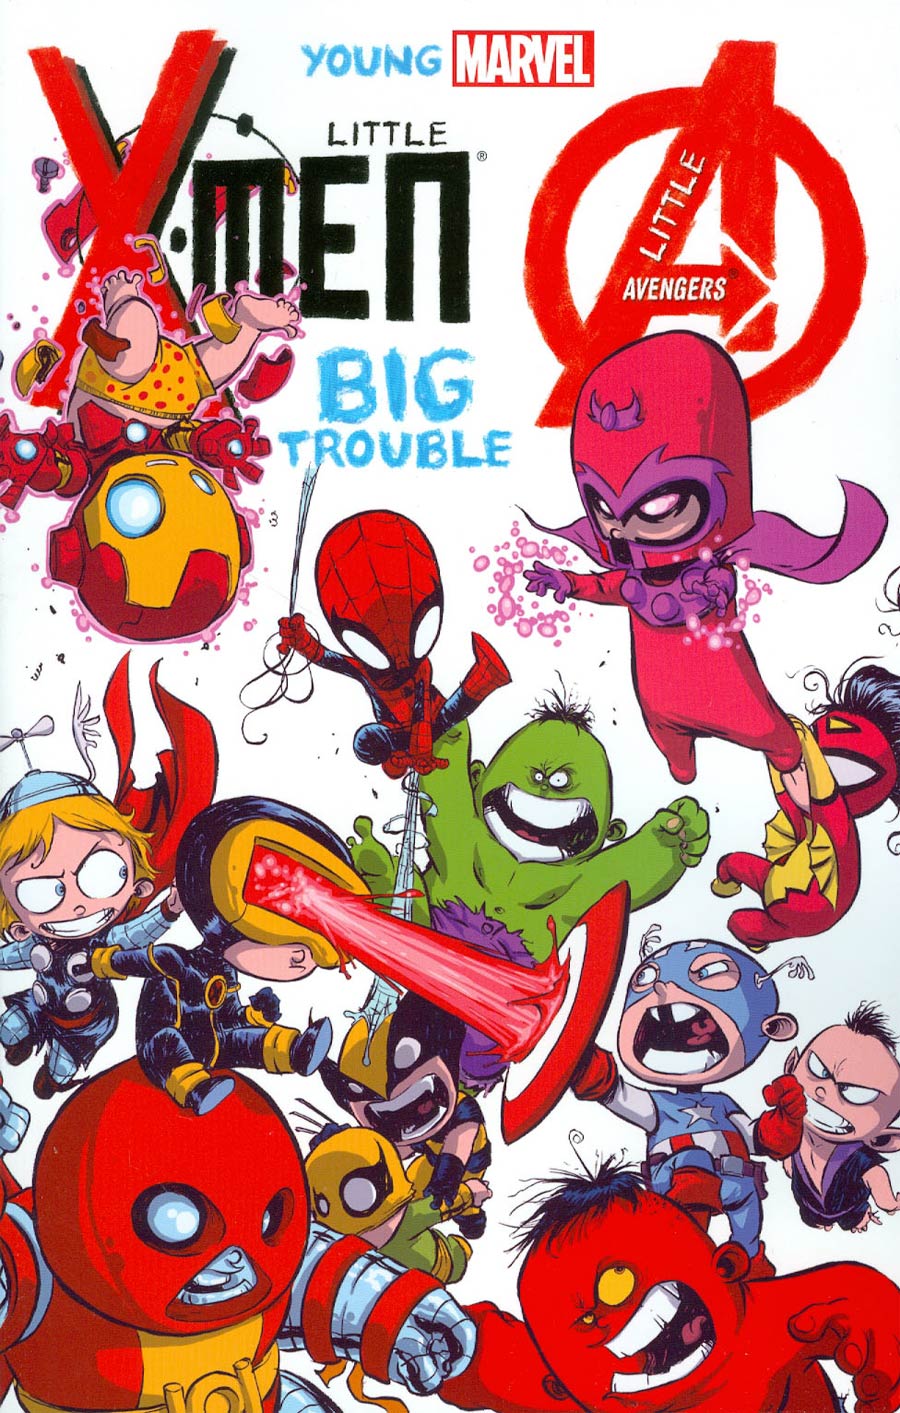 Young Marvel Little X-Men Little Avengers Big Trouble TP